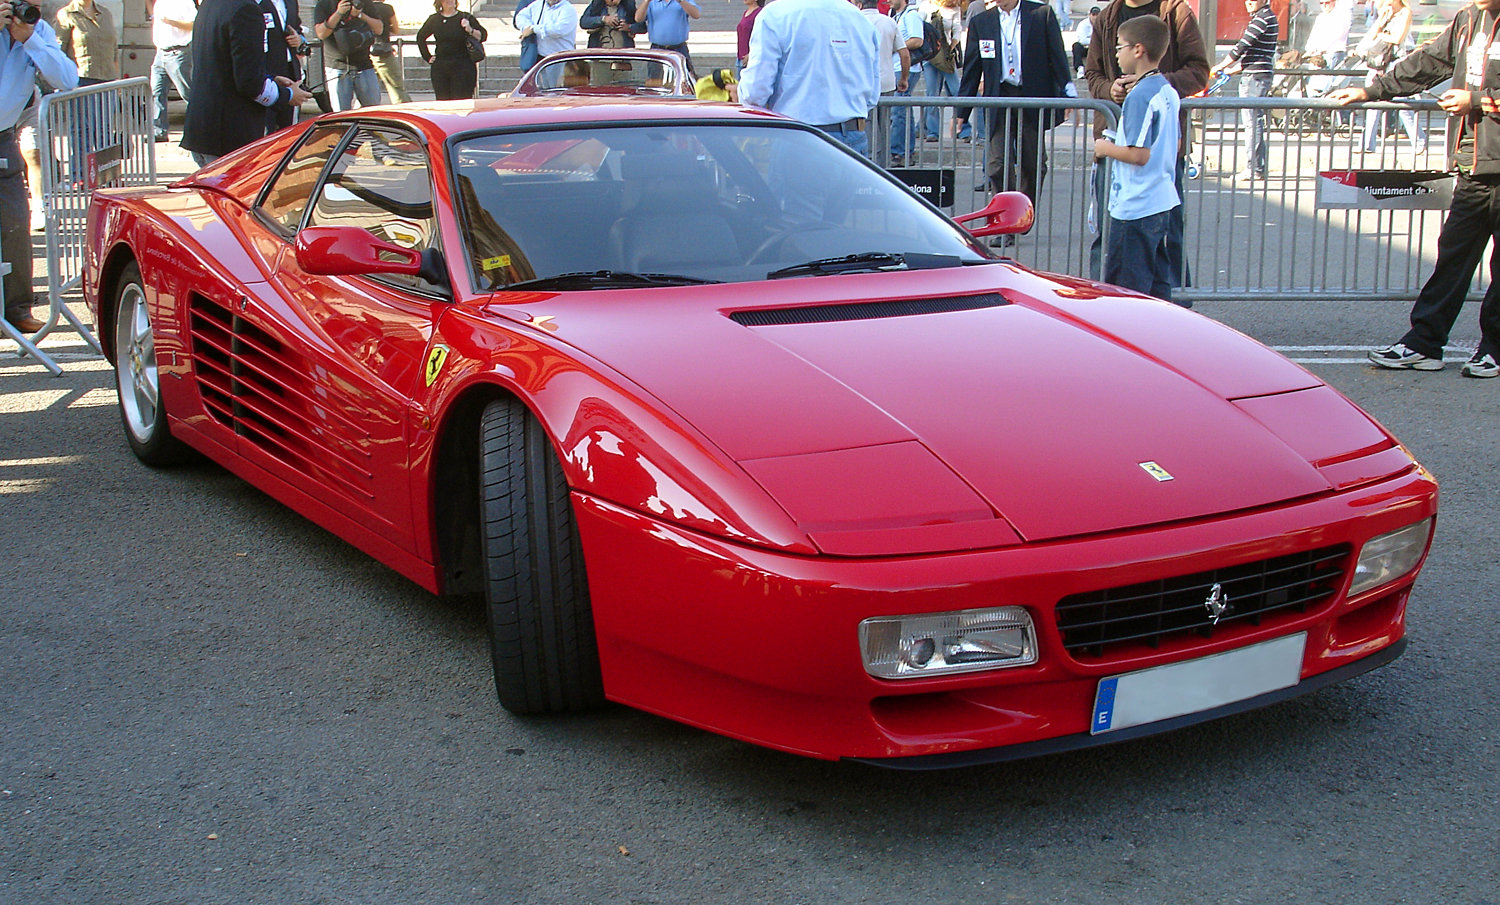 Ferrari Testarossa 1996